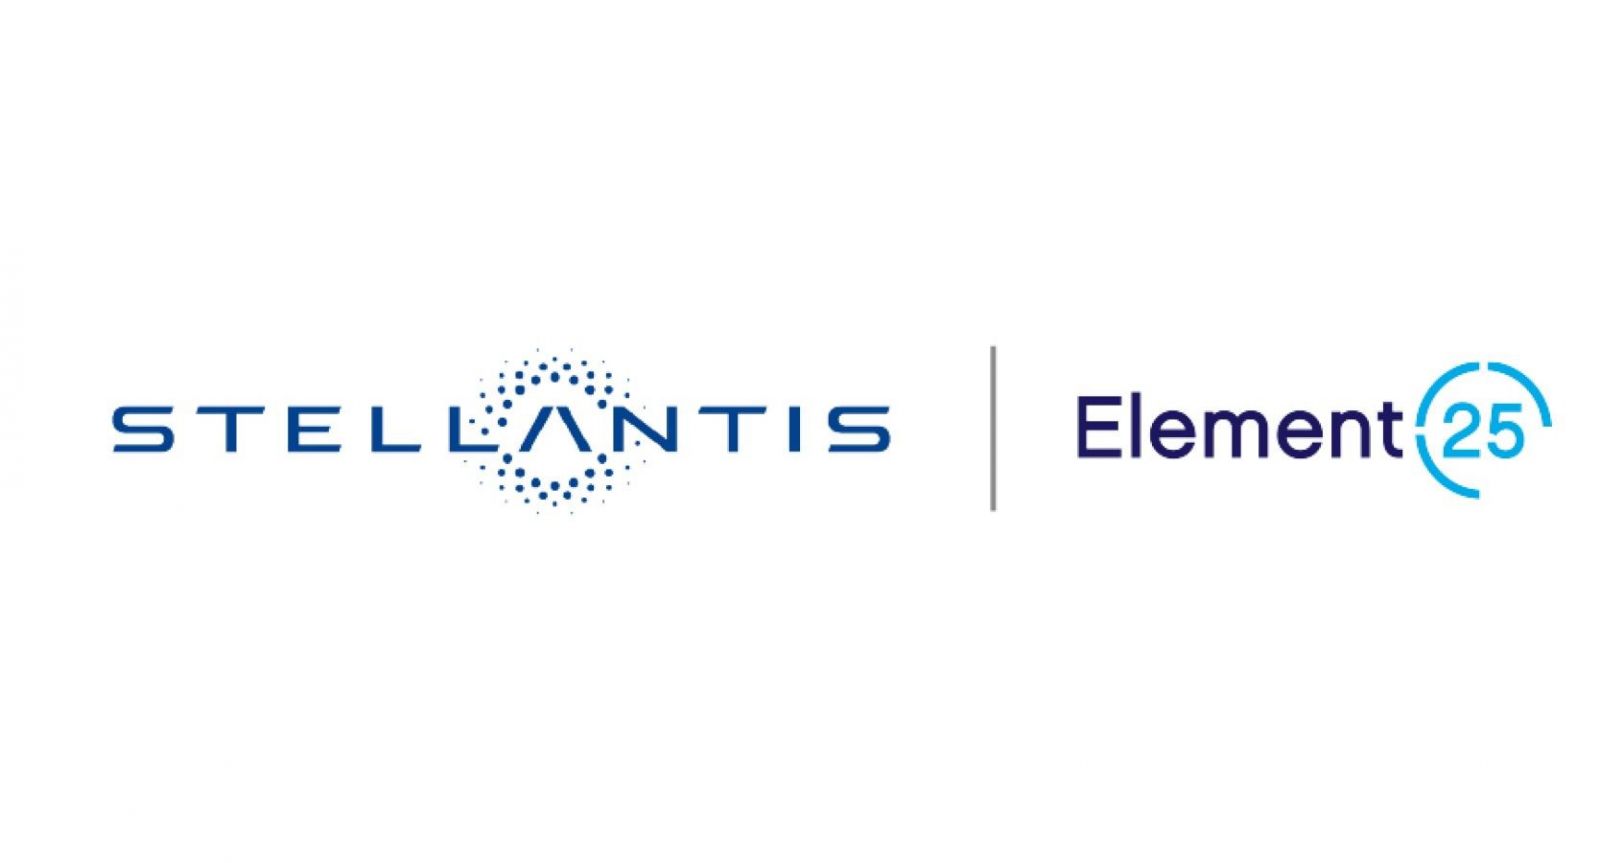 Batterie per veicoli elettrici: c'è l'accordo di fornitura tra Stellantis ed Element 25 